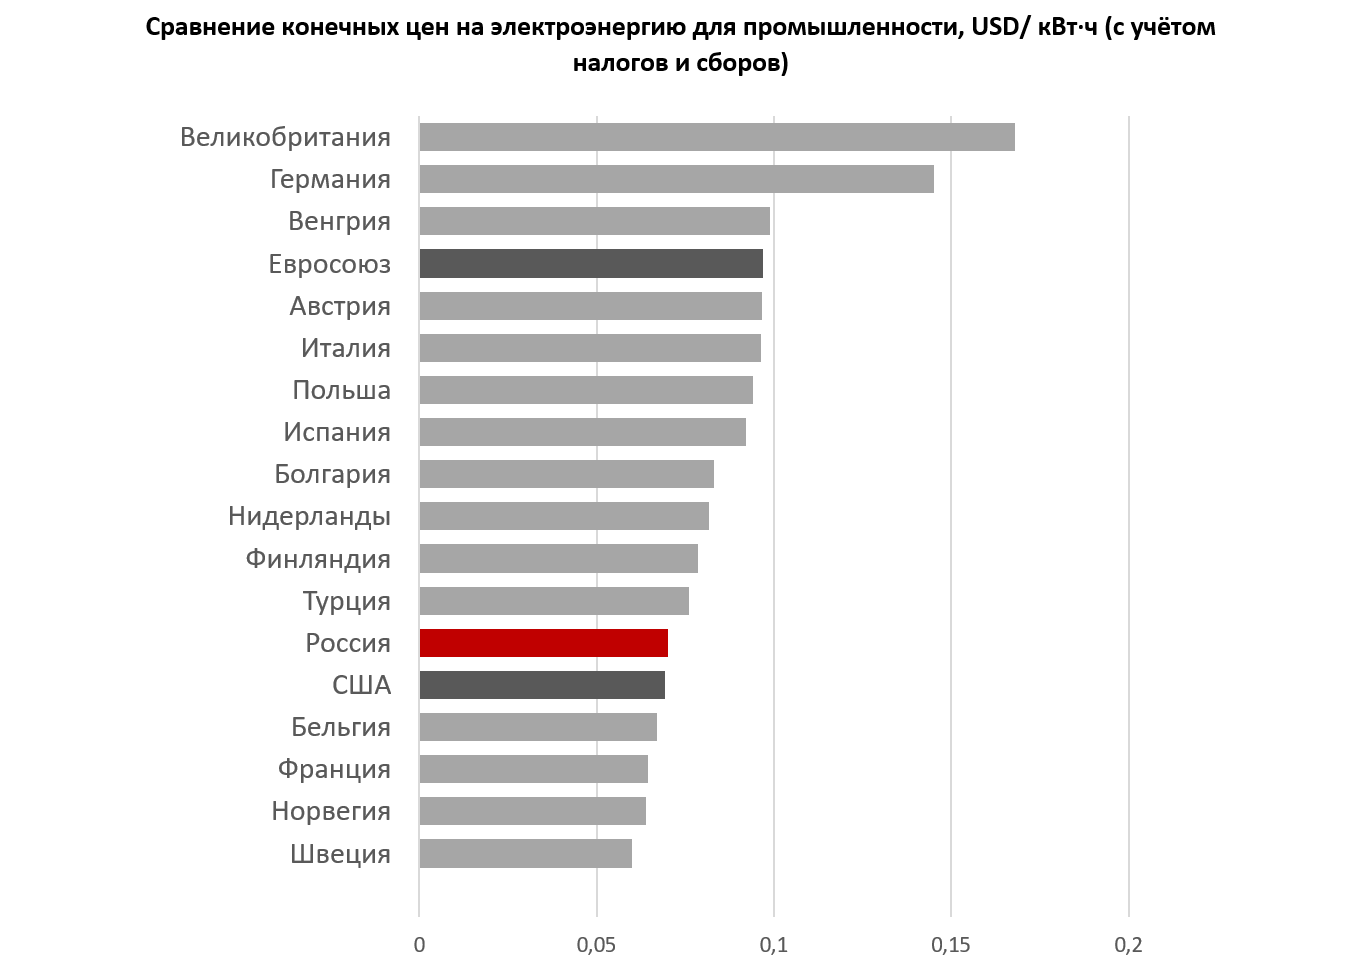 Тарифы на электроэнергию в россии сильно. Себестоимость 1 КВТ часа электроэнергии в РФ. Расценки электроэнергии по стране. Стоимость электроэнергии для предприятий. Средняя стоимость электроэнергии.